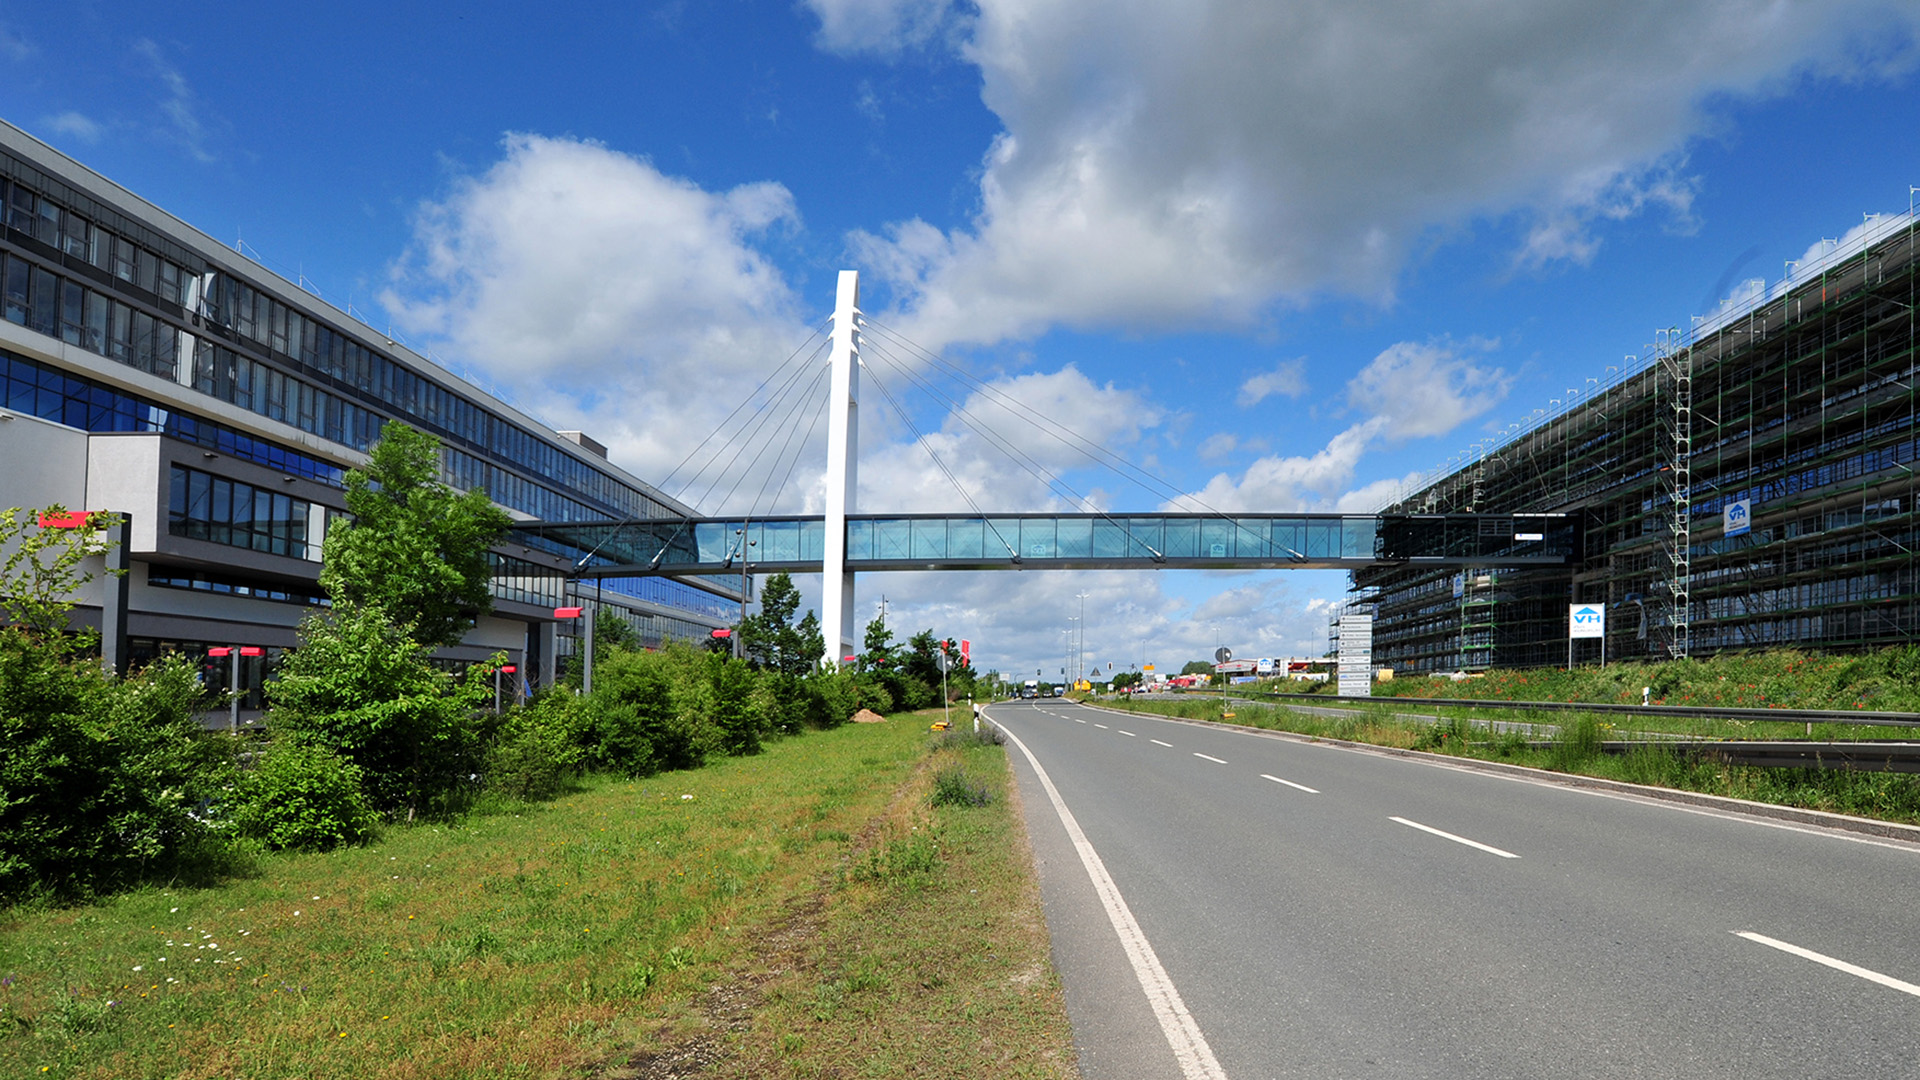 Verbindungsbrücke Stahlbau Lamparter für Puma in Herzogenaurach aus Stahl und Glas. Stahlbau.